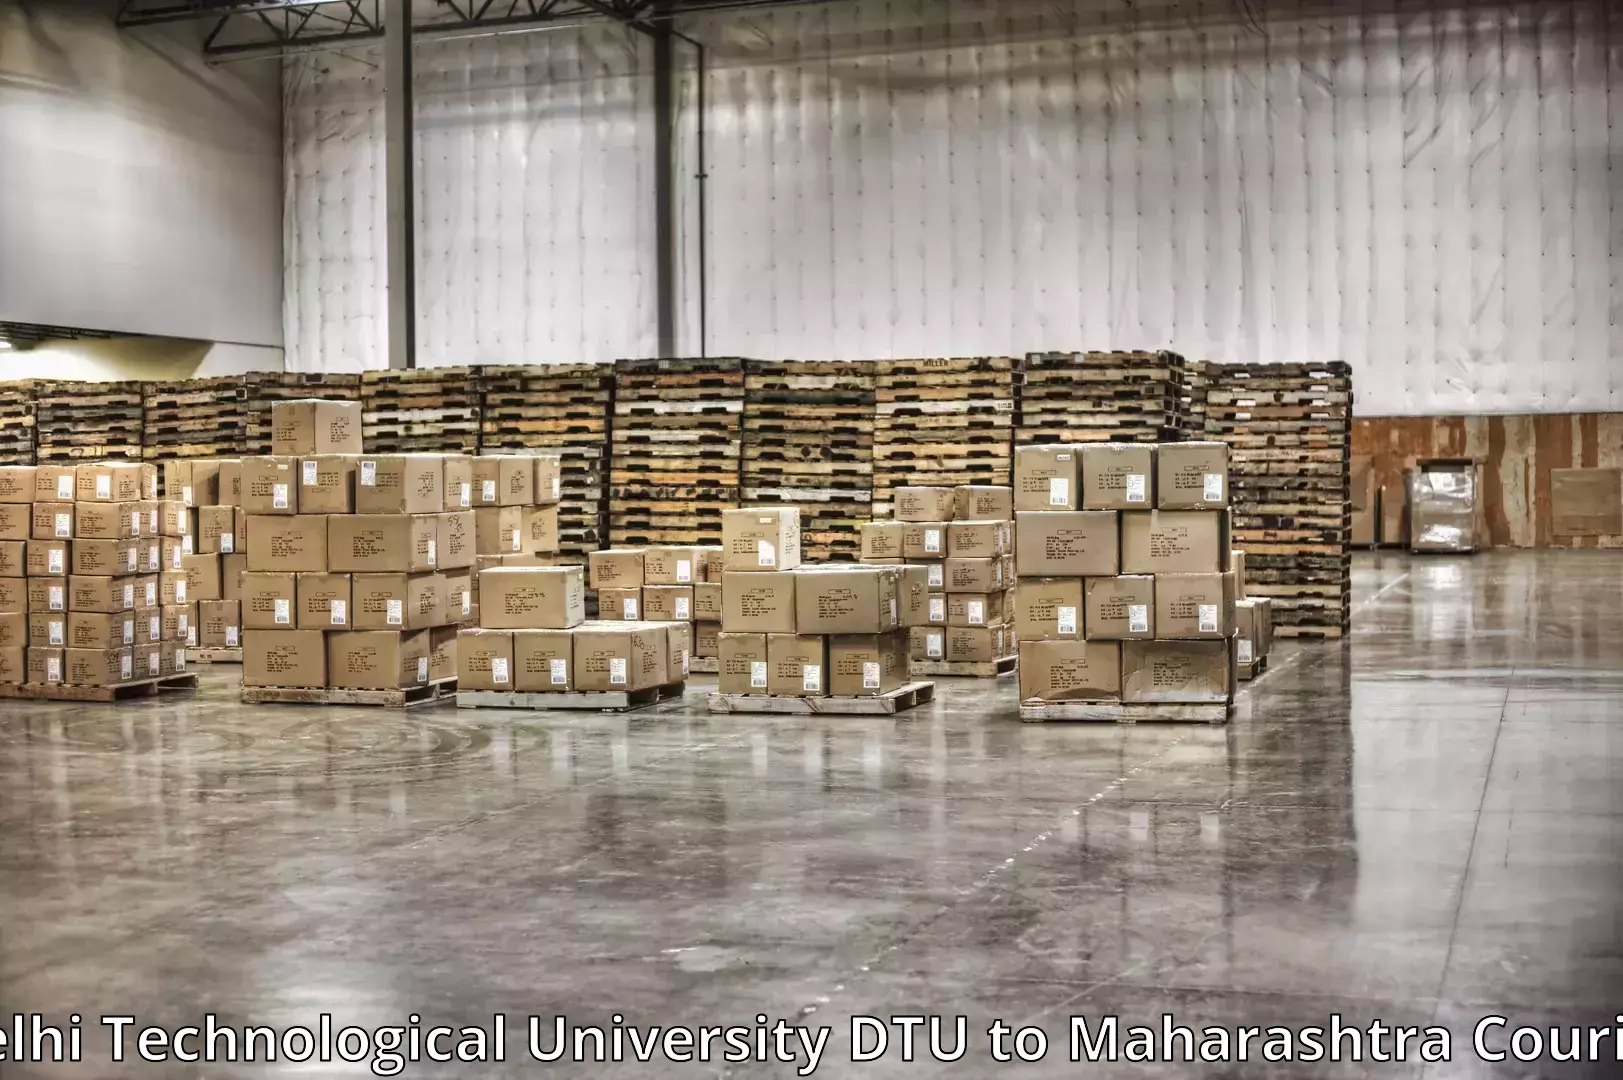 Furniture moving plans Delhi Technological University DTU to Nashik